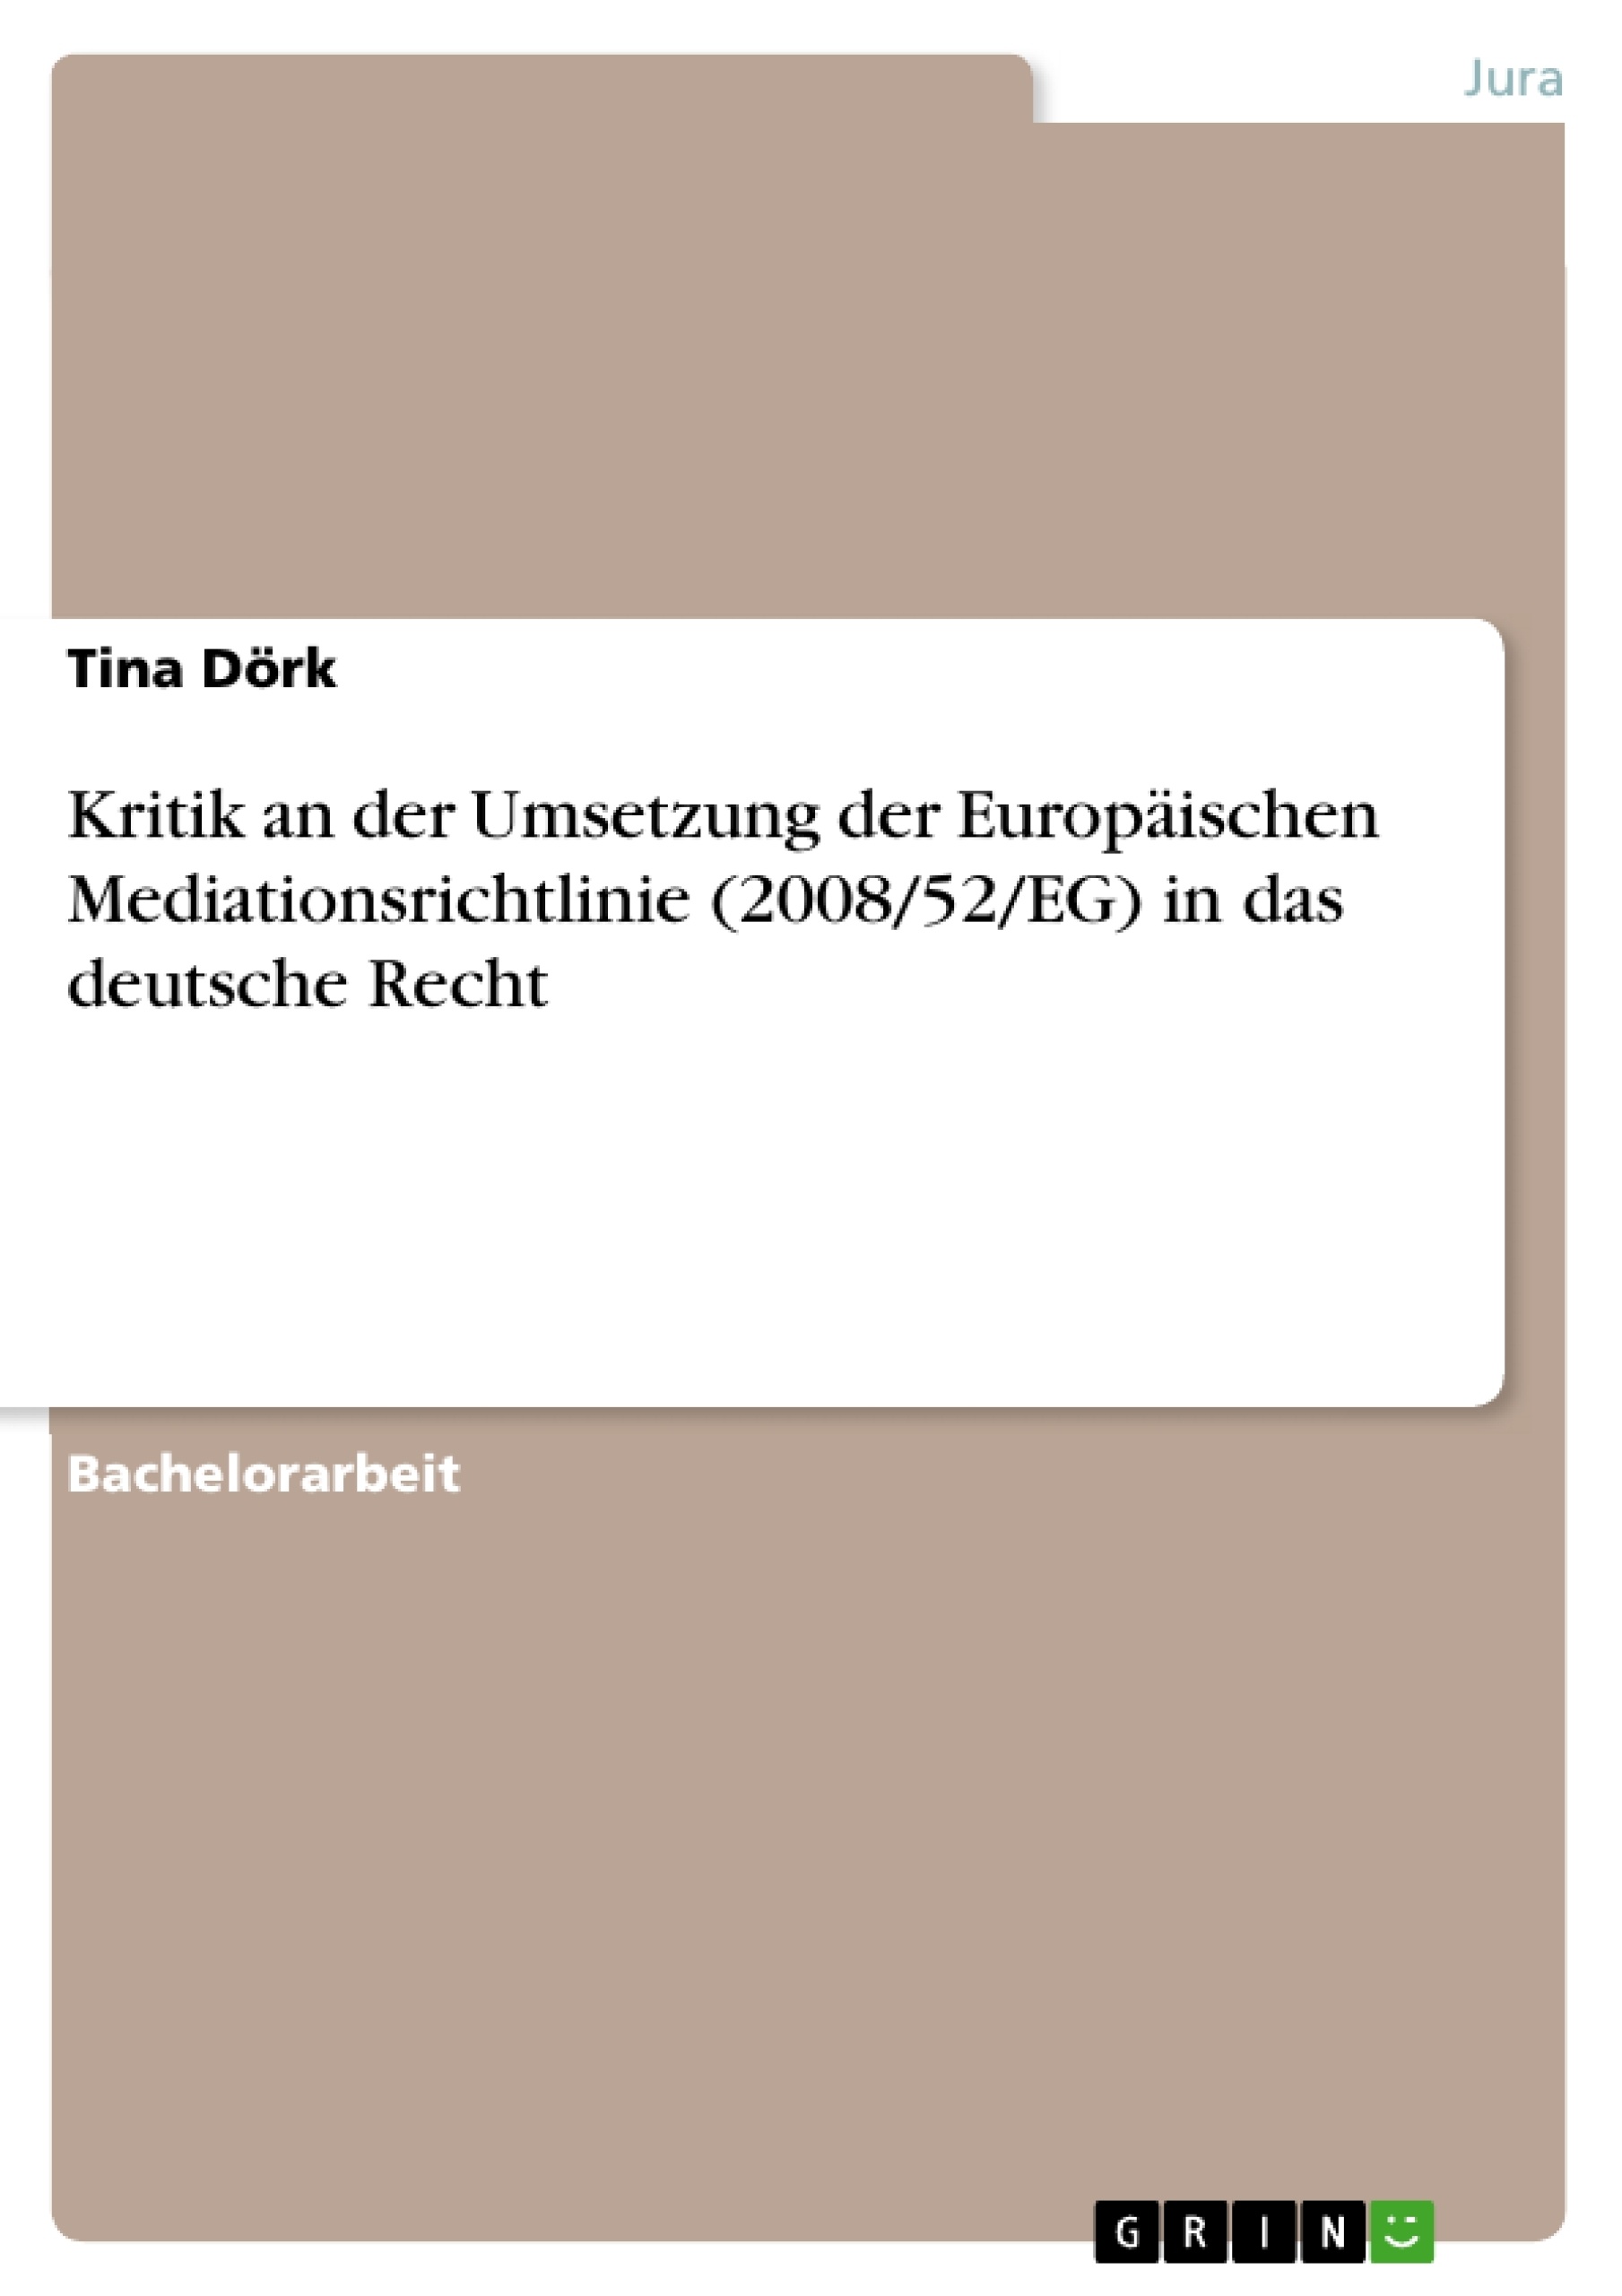 Title: Kritik an der Umsetzung der Europäischen Mediationsrichtlinie (2008/52/EG) in das deutsche Recht